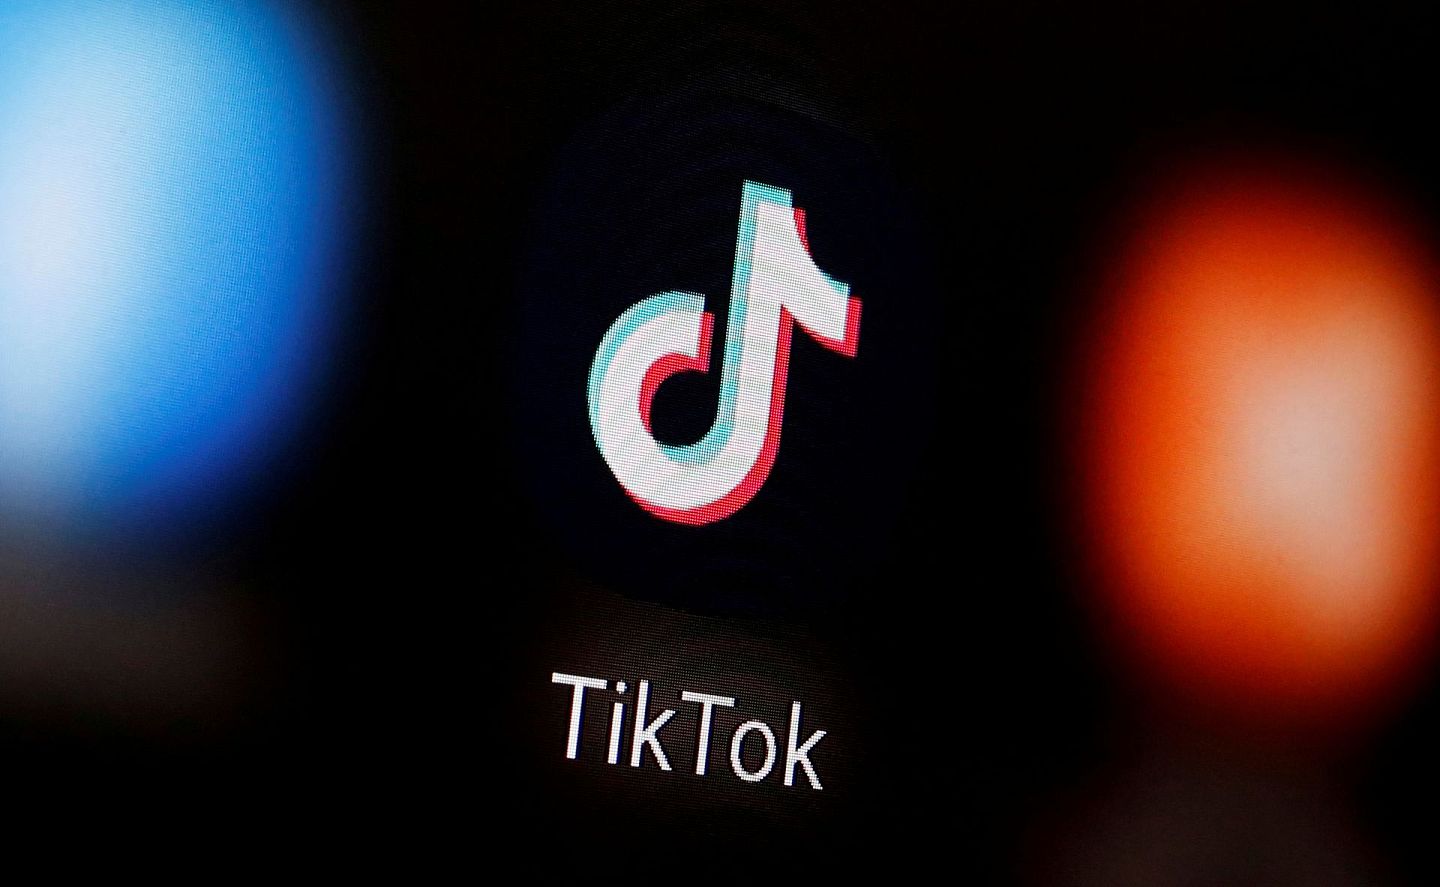 中国公司字节跳动称自身是一个全球化公司，旗下产品TikTok在全球市场拥有众多用户。 （Reuters）